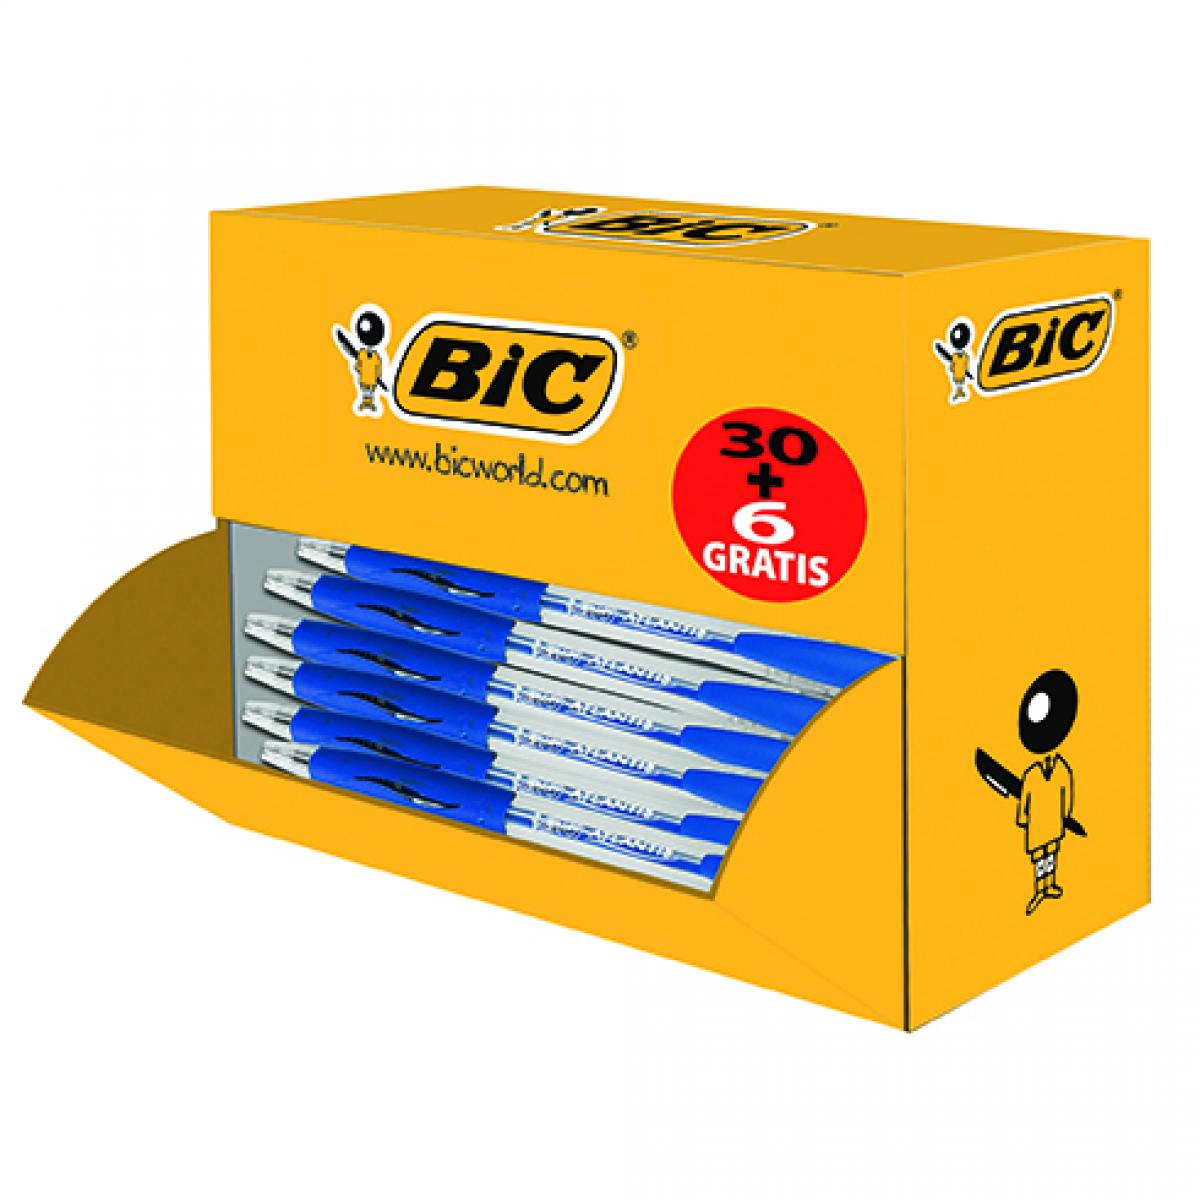 Bic - Les Rasoirs Rechargeables à la Française. - Pack de 36 Atlantis Bic bleu rétractables dont 6 offerts - Accessoires Bureau